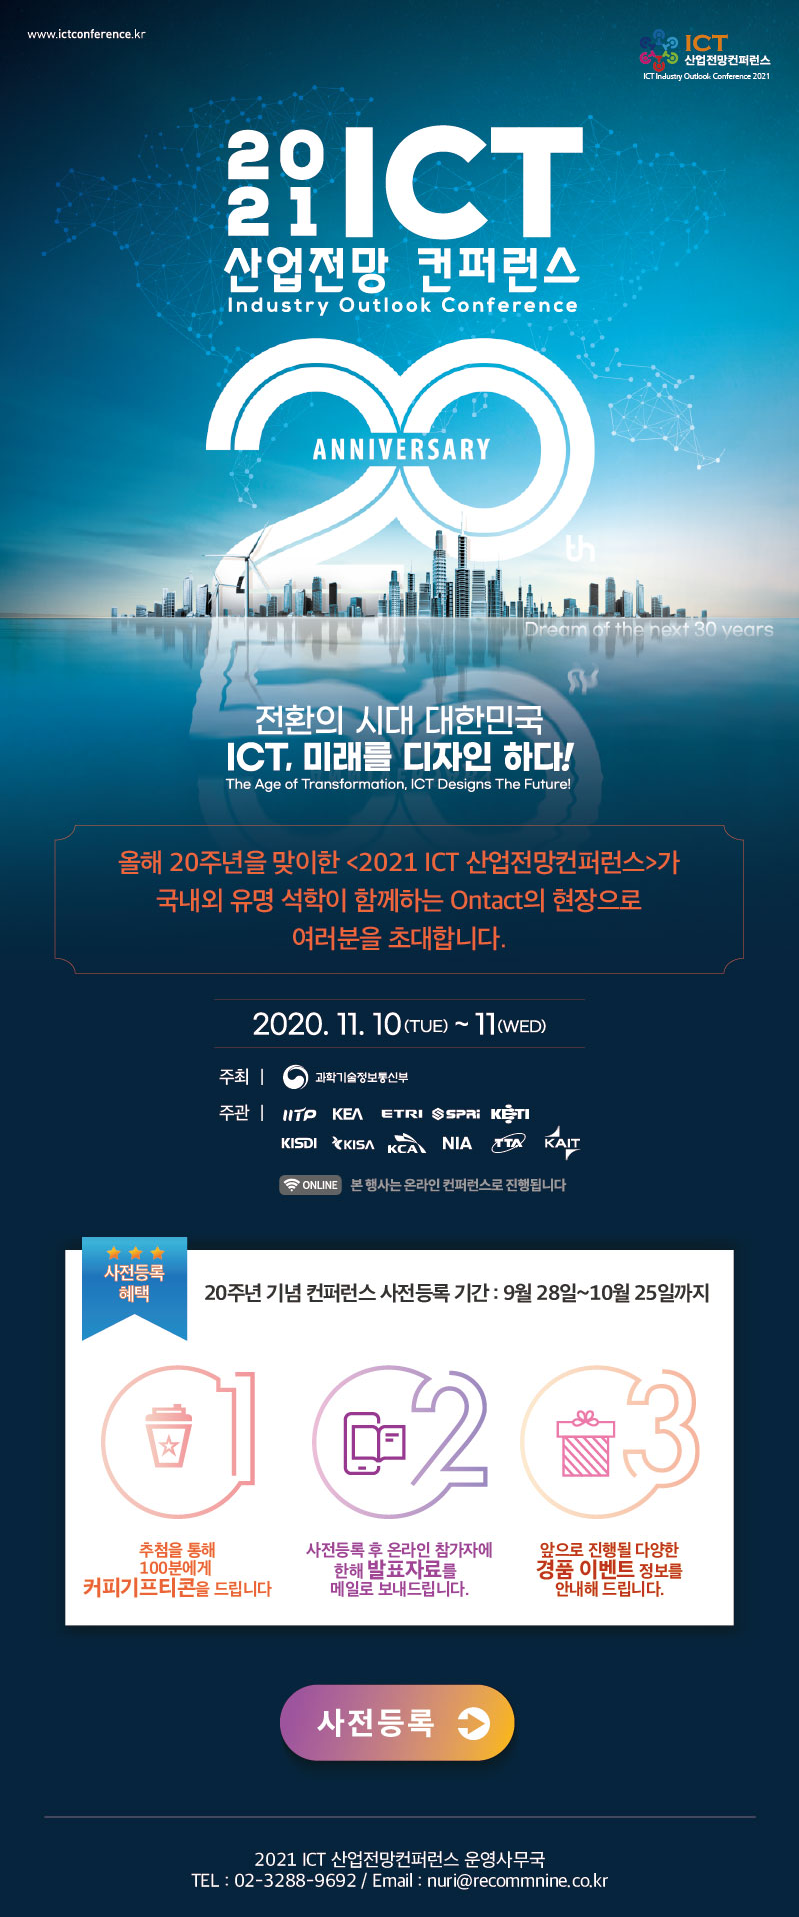 2021 ICT 산업전망 컨퍼런스 개최 안내